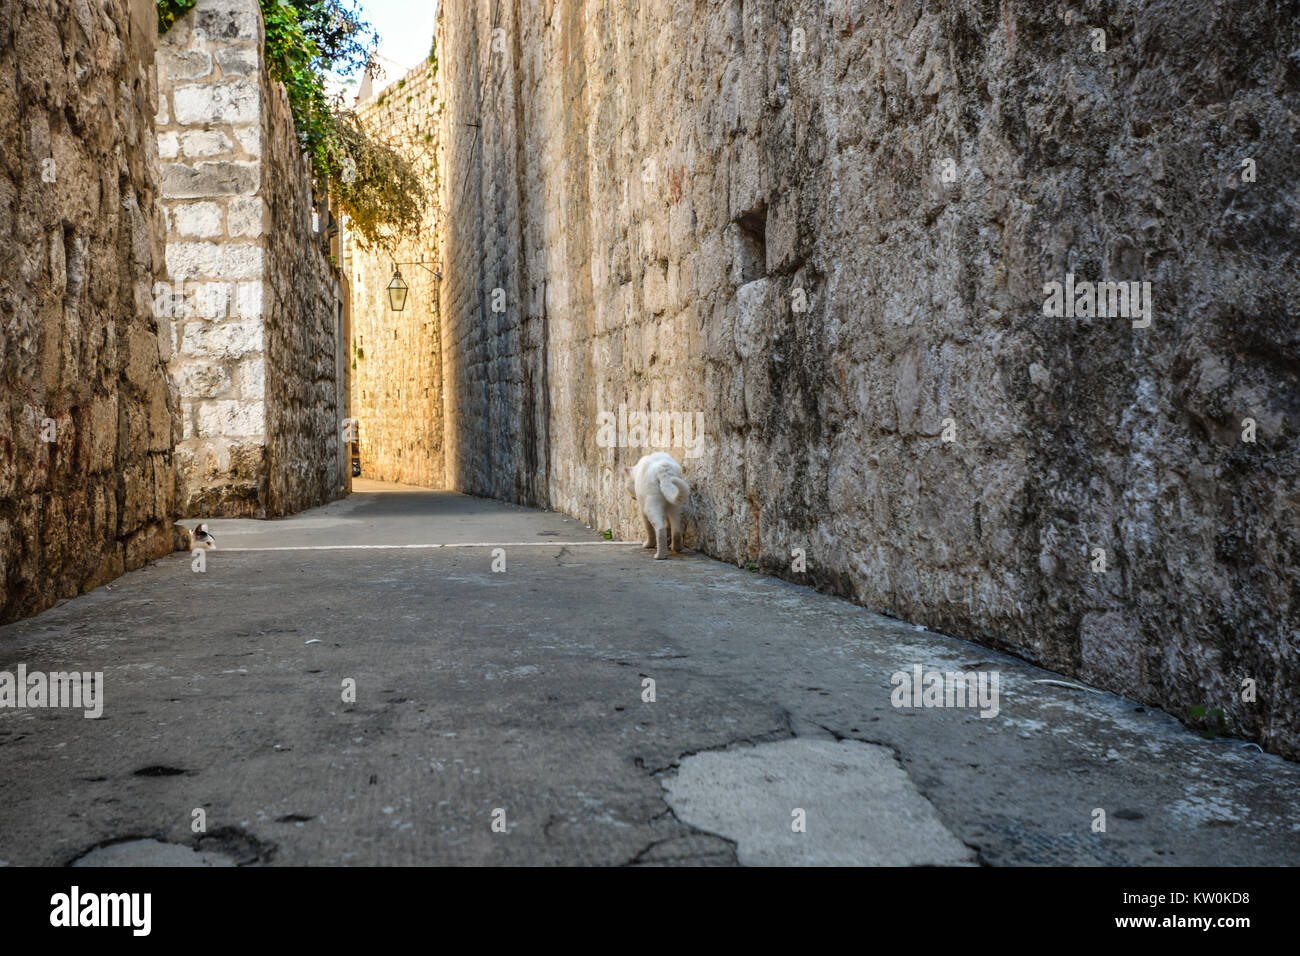 Zwei Katzen entlang der Stadtmauer der Altstadt von Dubrovnik, Kroatien. Eine schwarz-weiße Katze versteckt als weiße Katze Spaziergänge entlang der Wand Stockfoto